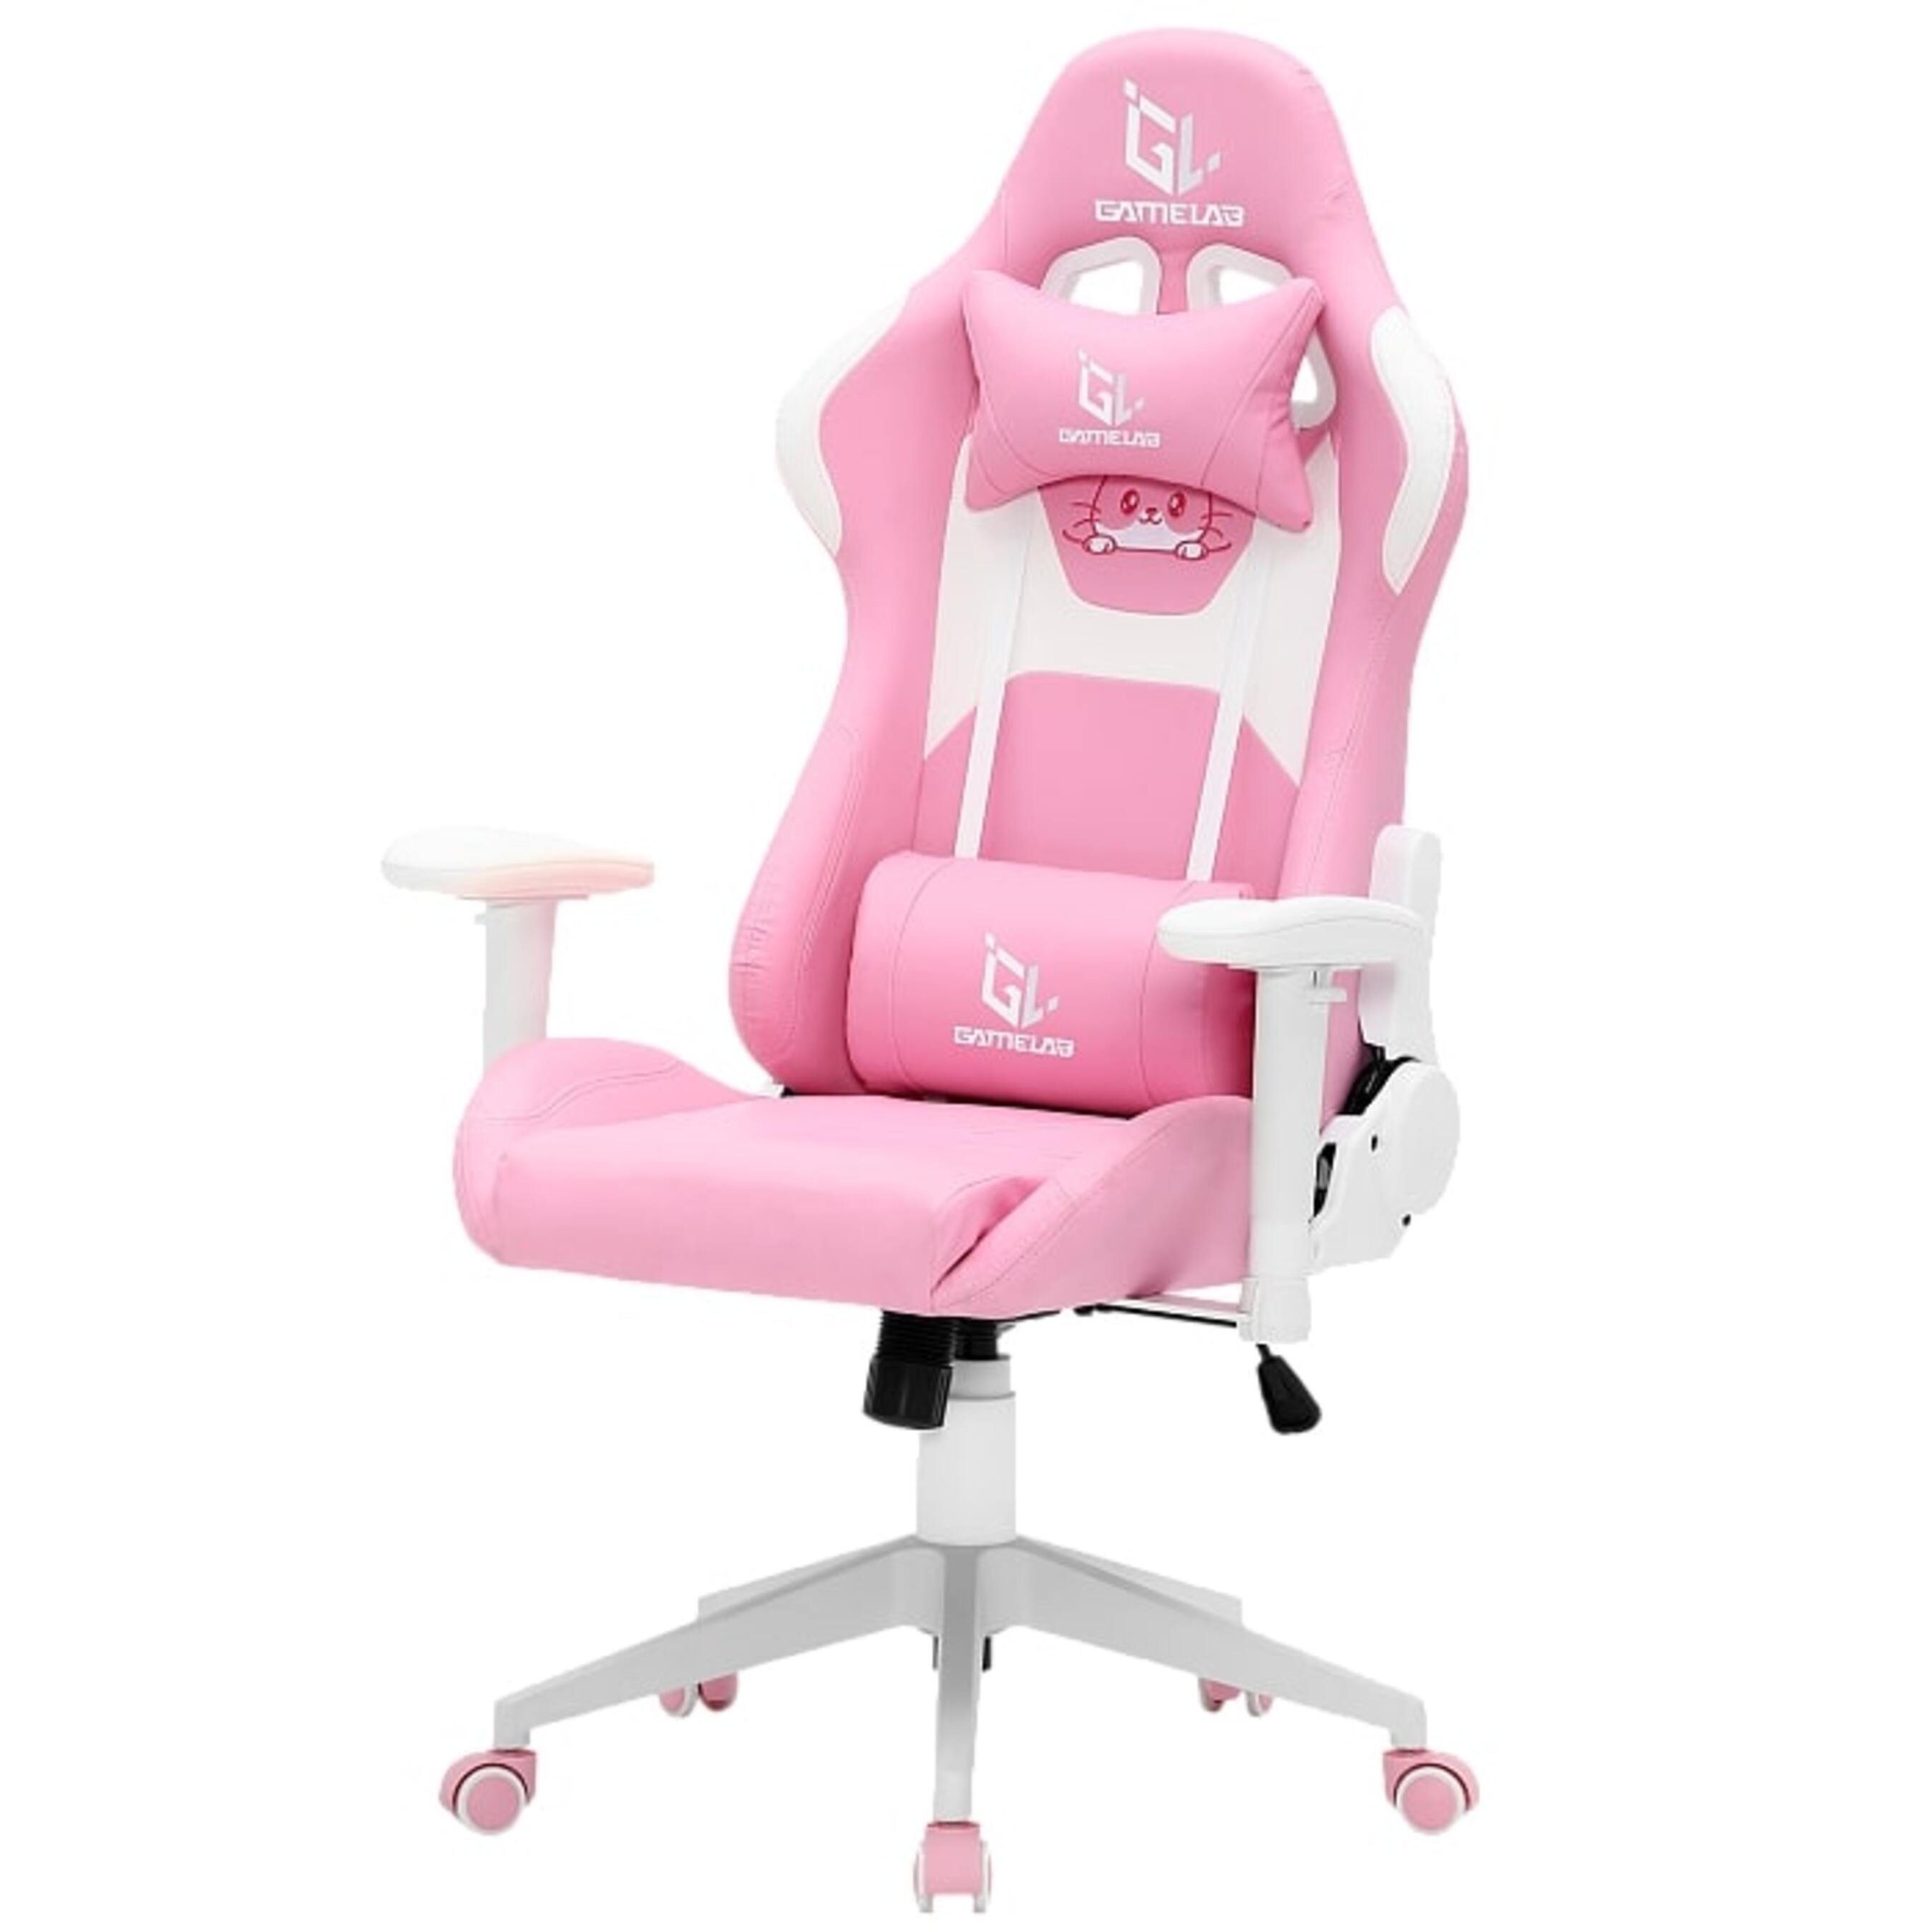 Игровые кресла GameLab KITTY игровые кресла gamelab tetra rgb pink